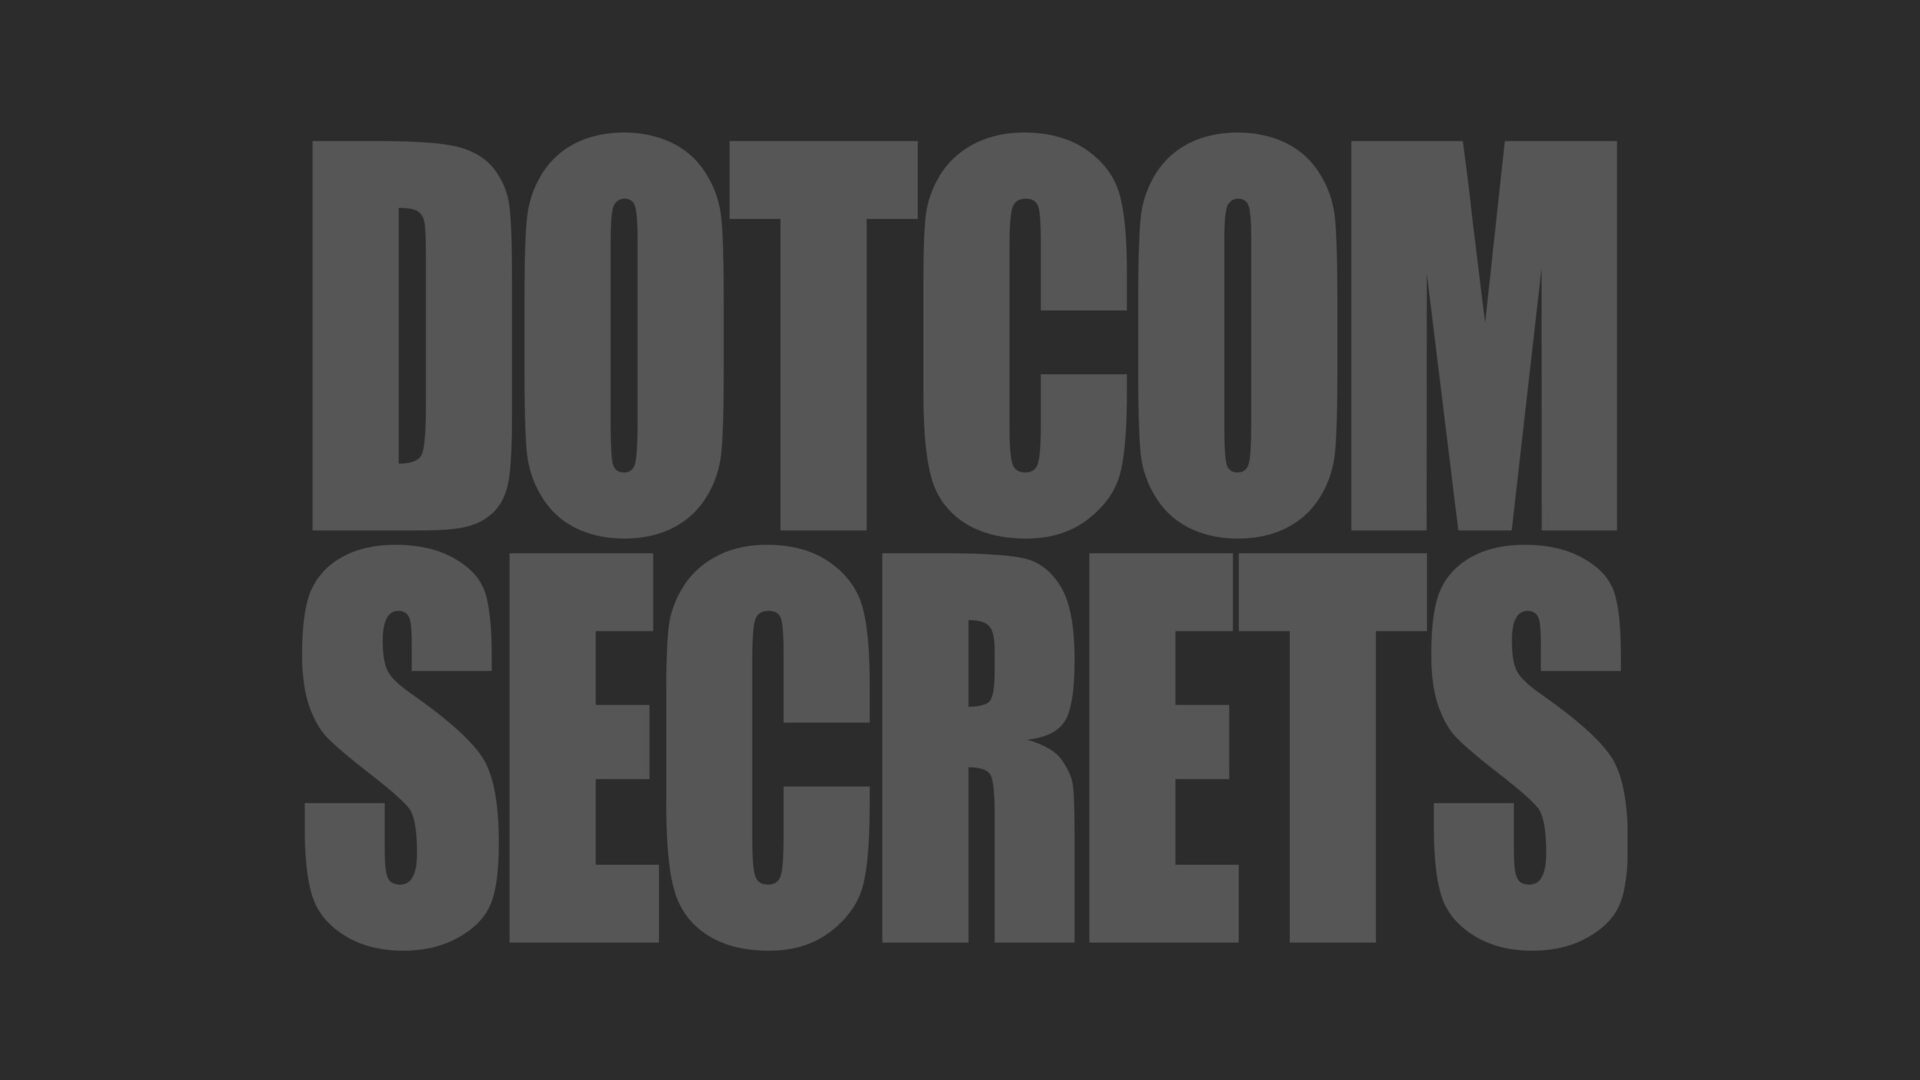 DOTCOM SECRETS